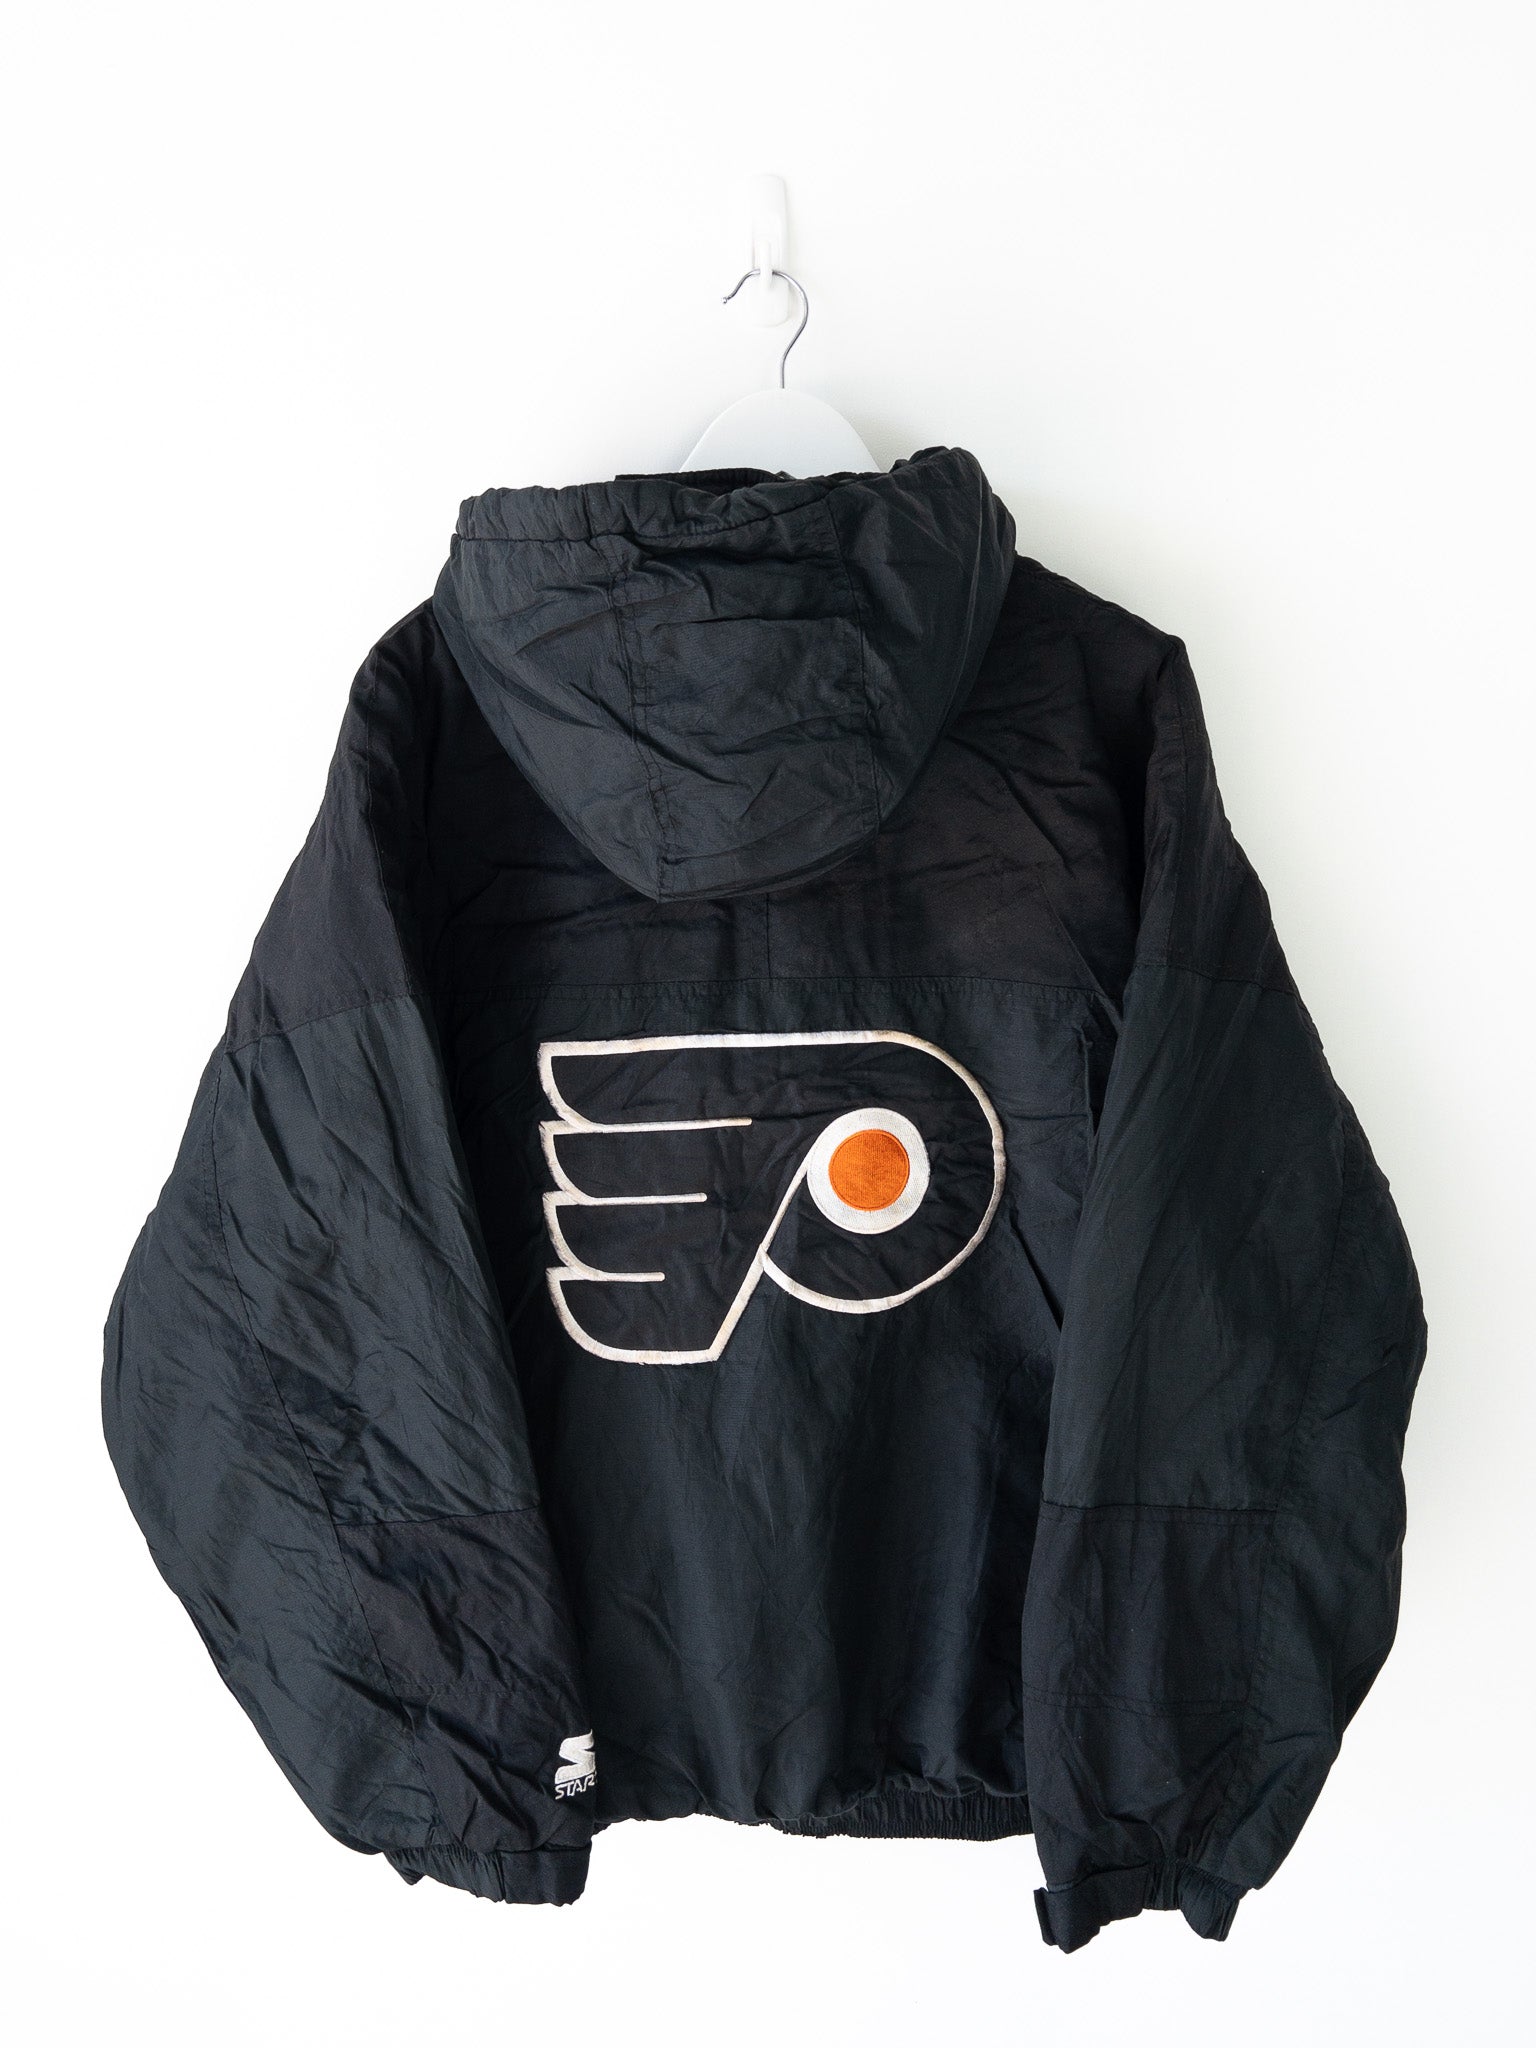 Vintage Philadelphia Flyers Jacket (XL)